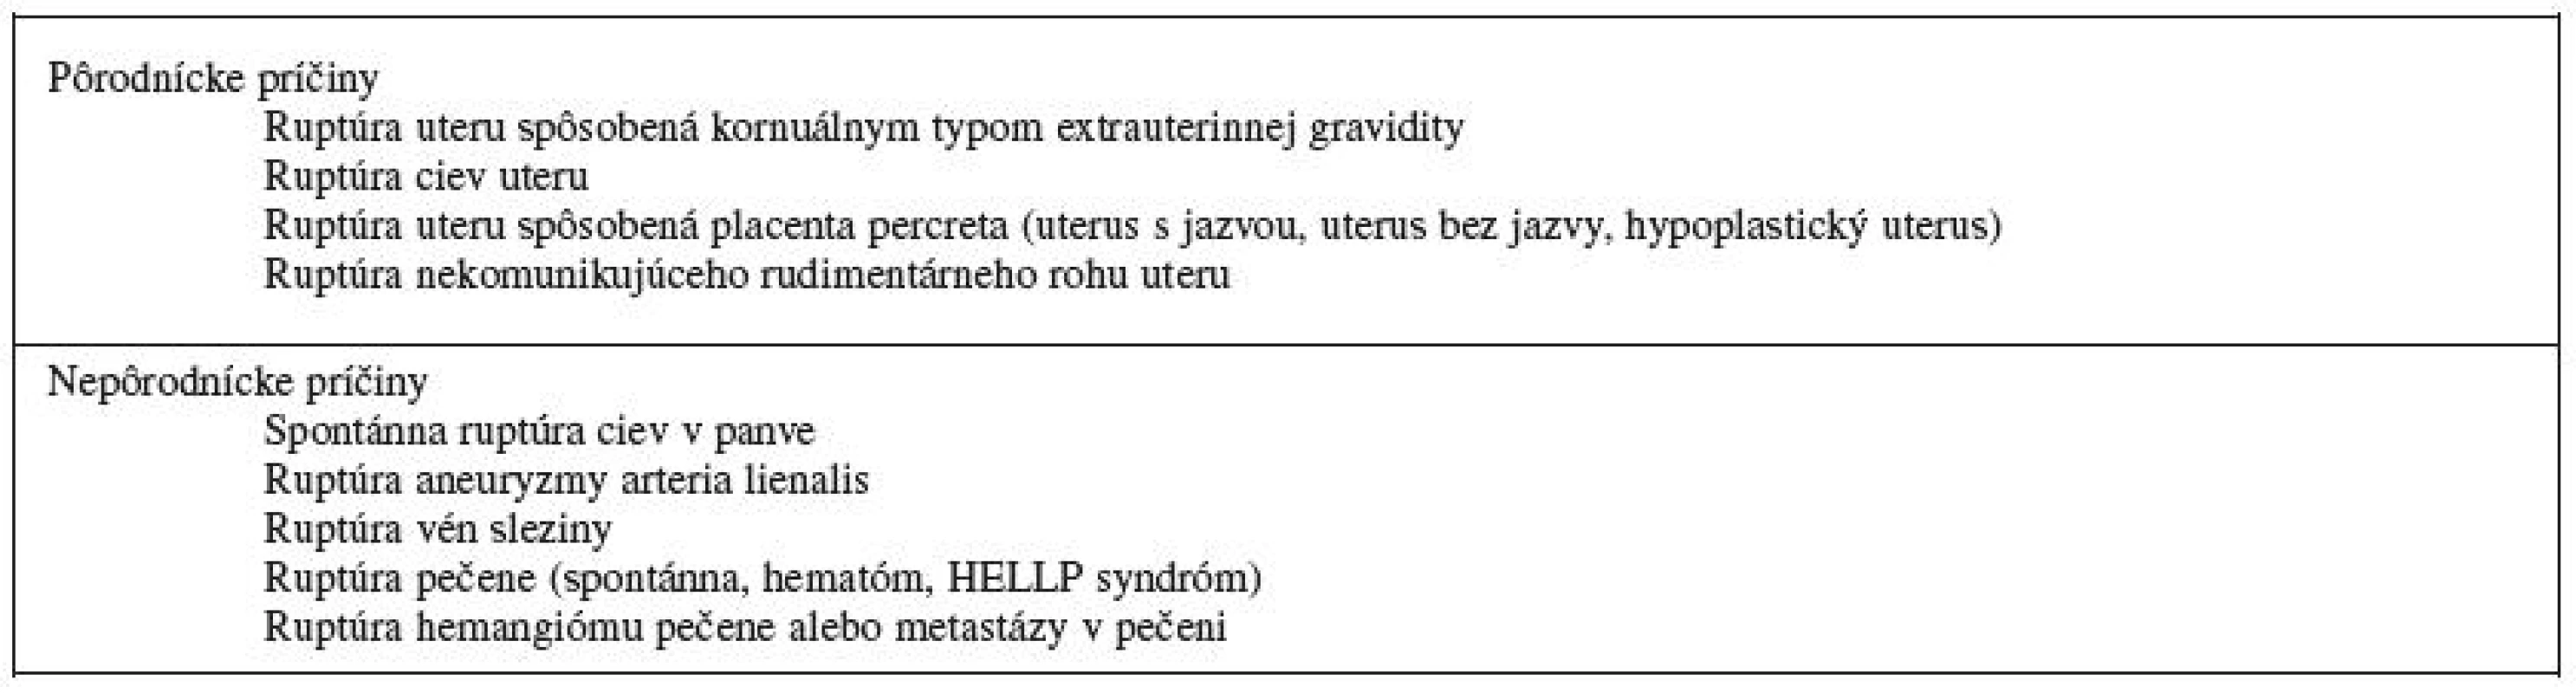 Príčiny spontánneho hemoperitonea po prvom trimestri gravidity [7]